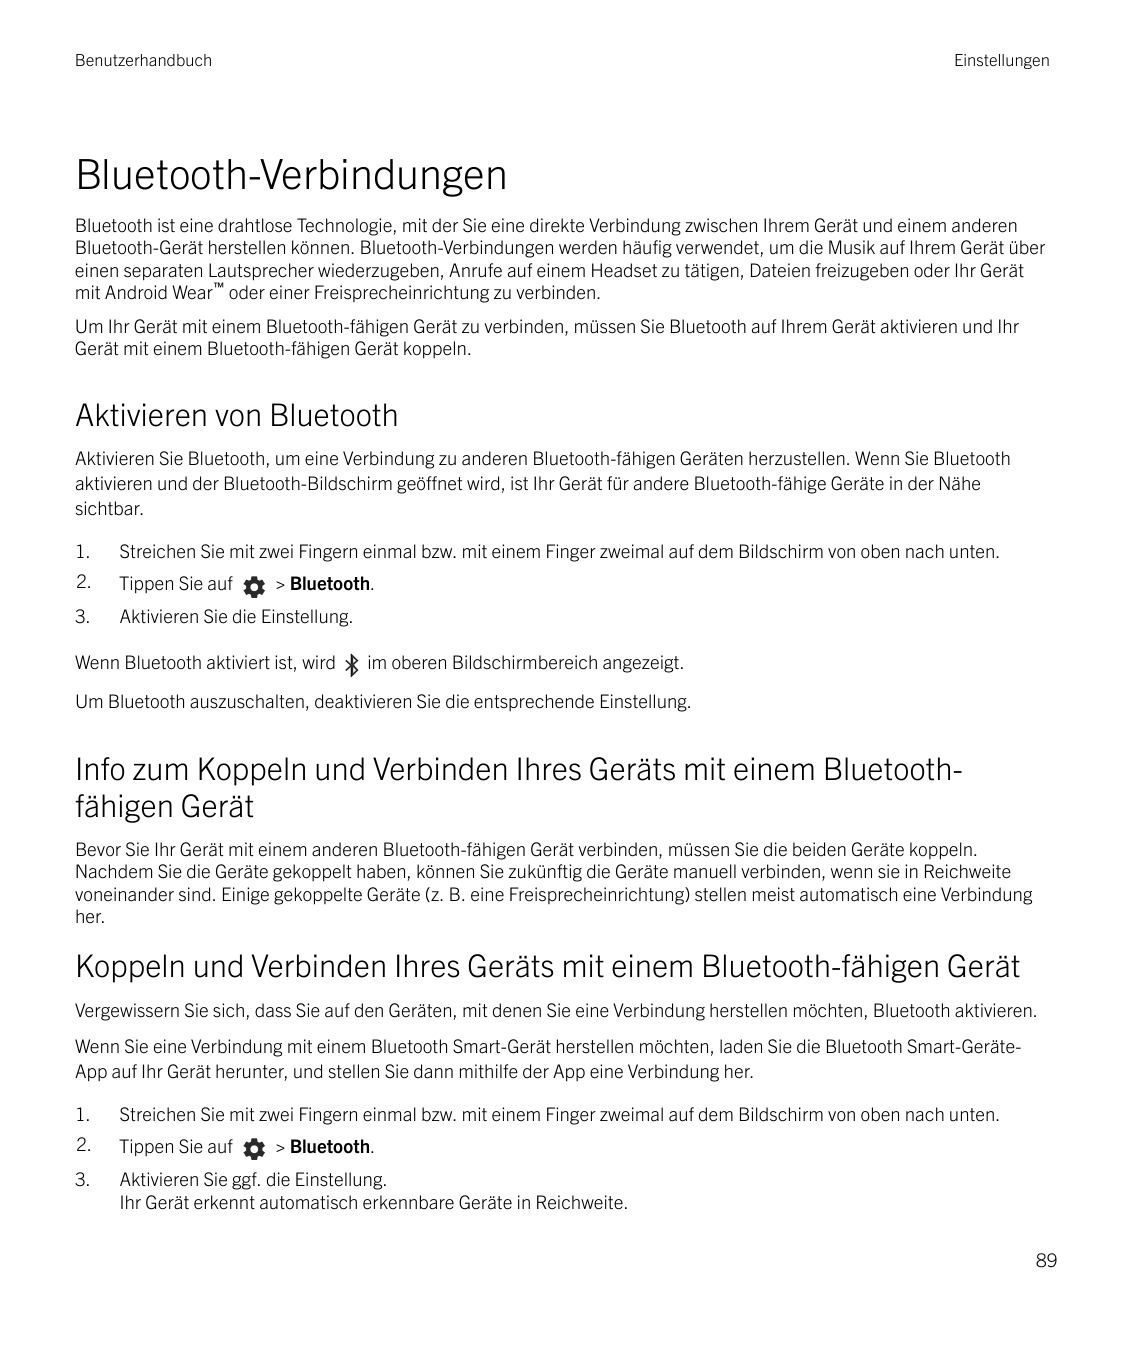 BenutzerhandbuchEinstellungenBluetooth-VerbindungenBluetooth ist eine drahtlose Technologie, mit der Sie eine direkte Verbindung